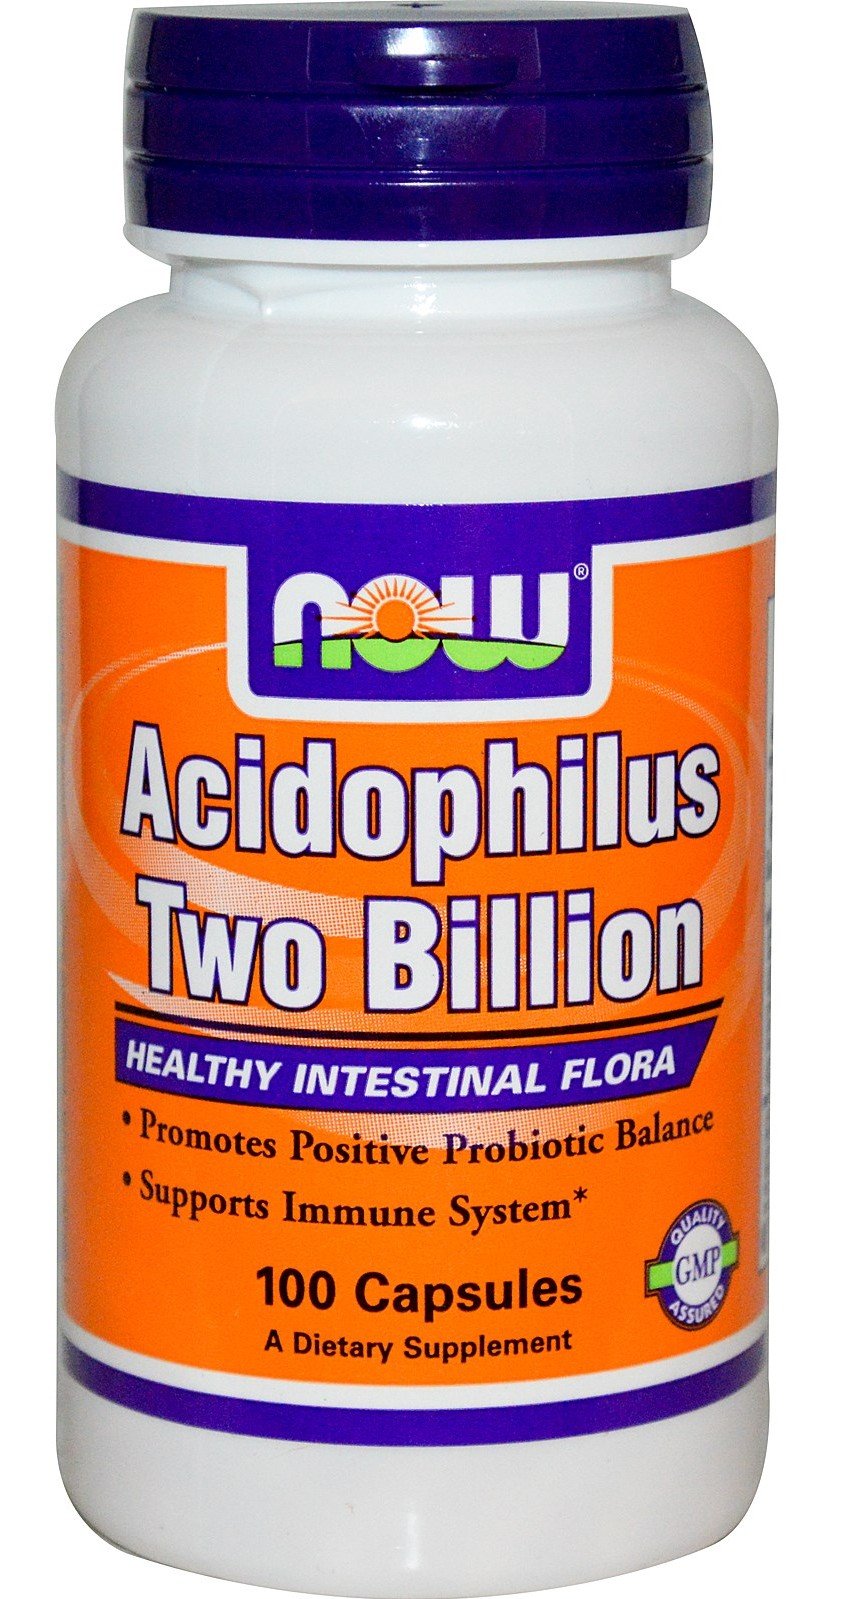 Acidophilus Two Billion, 100 pcs, Now. Special supplements. 